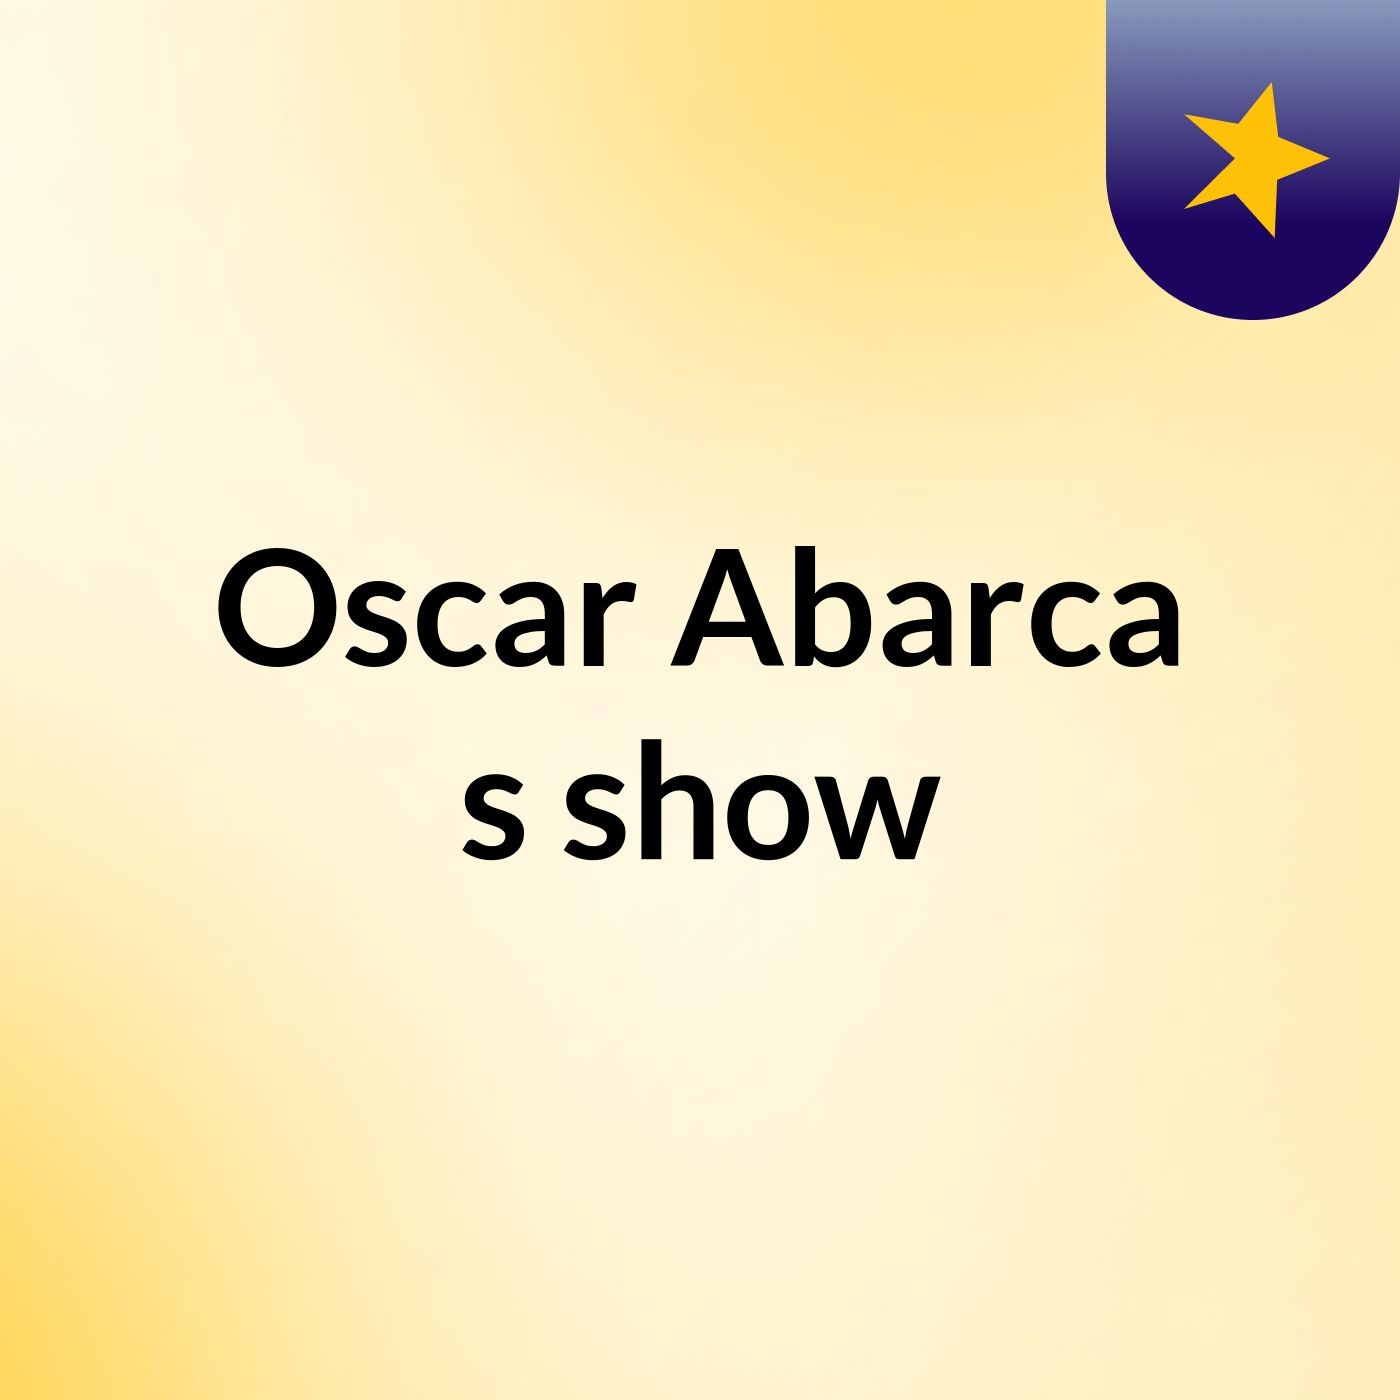 Oscar Abarca's show